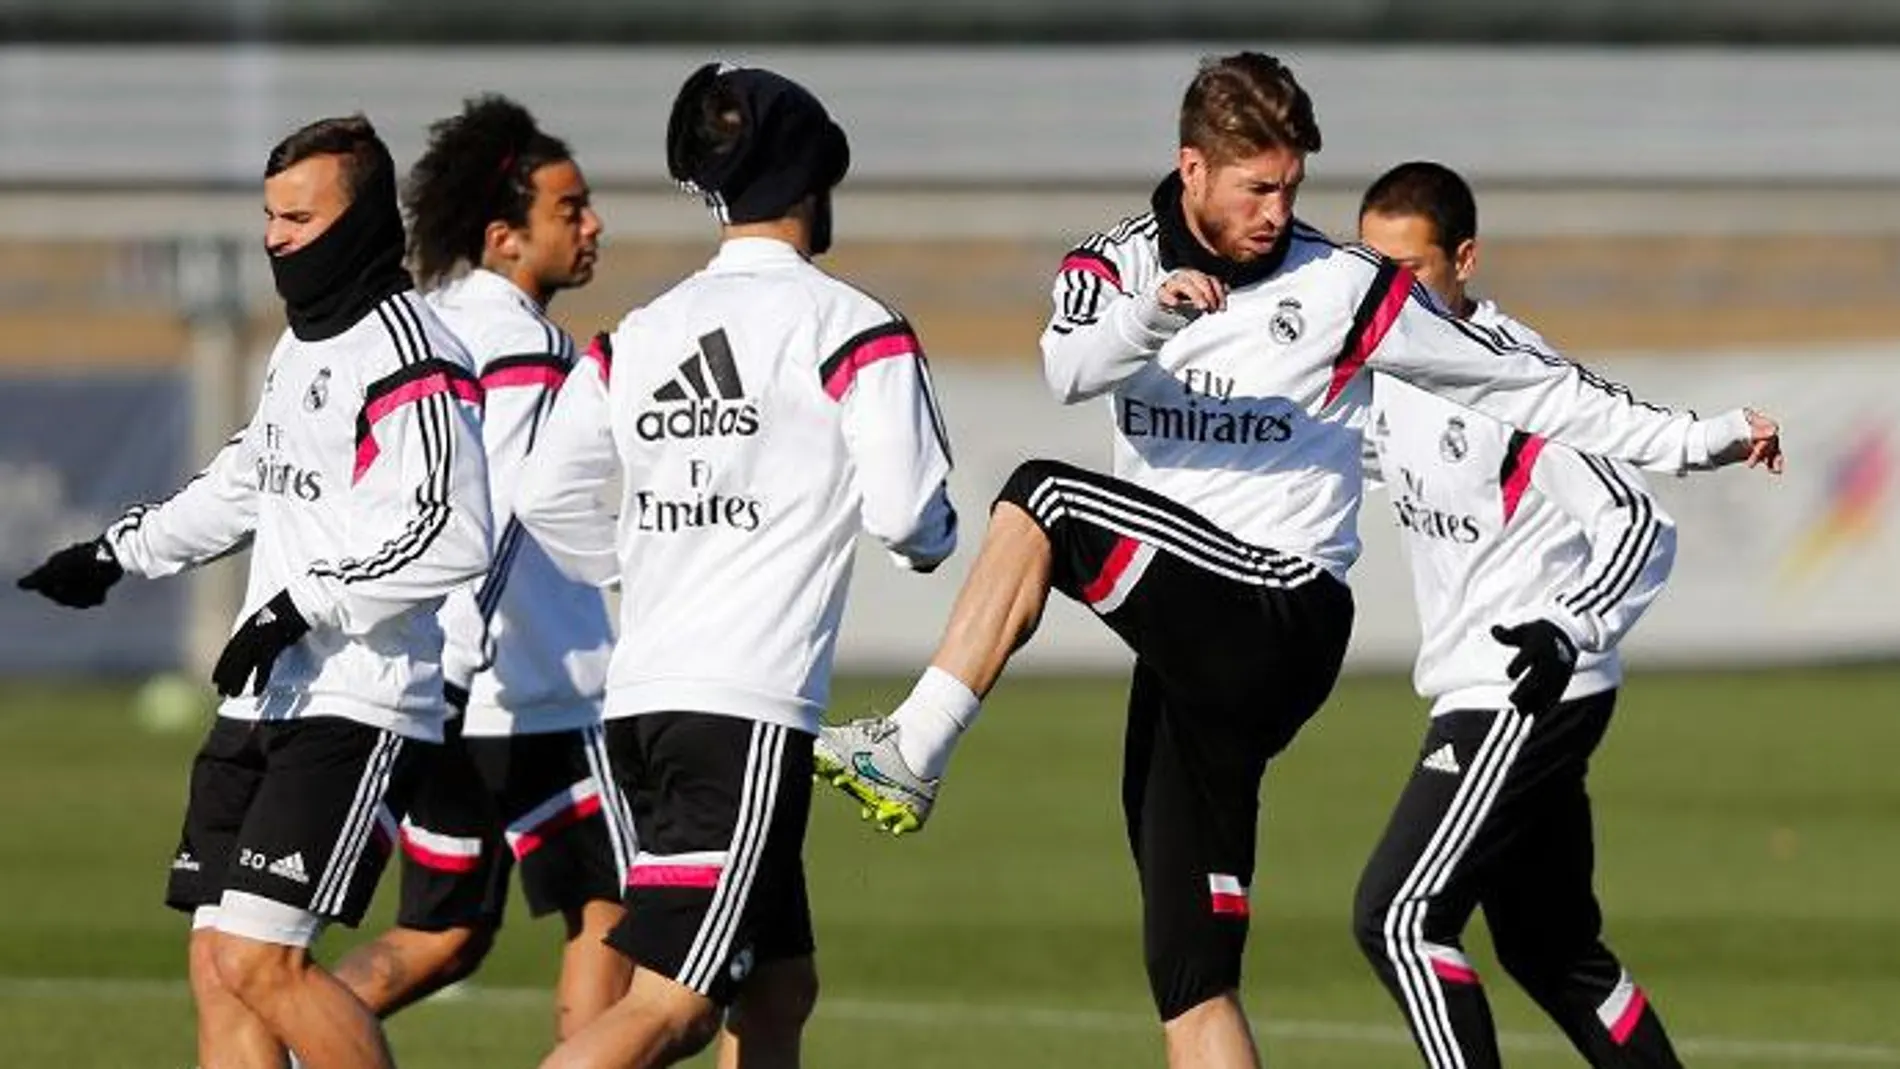 Último entrenamiento del Real Madrid antes de la visita al Almería mañana